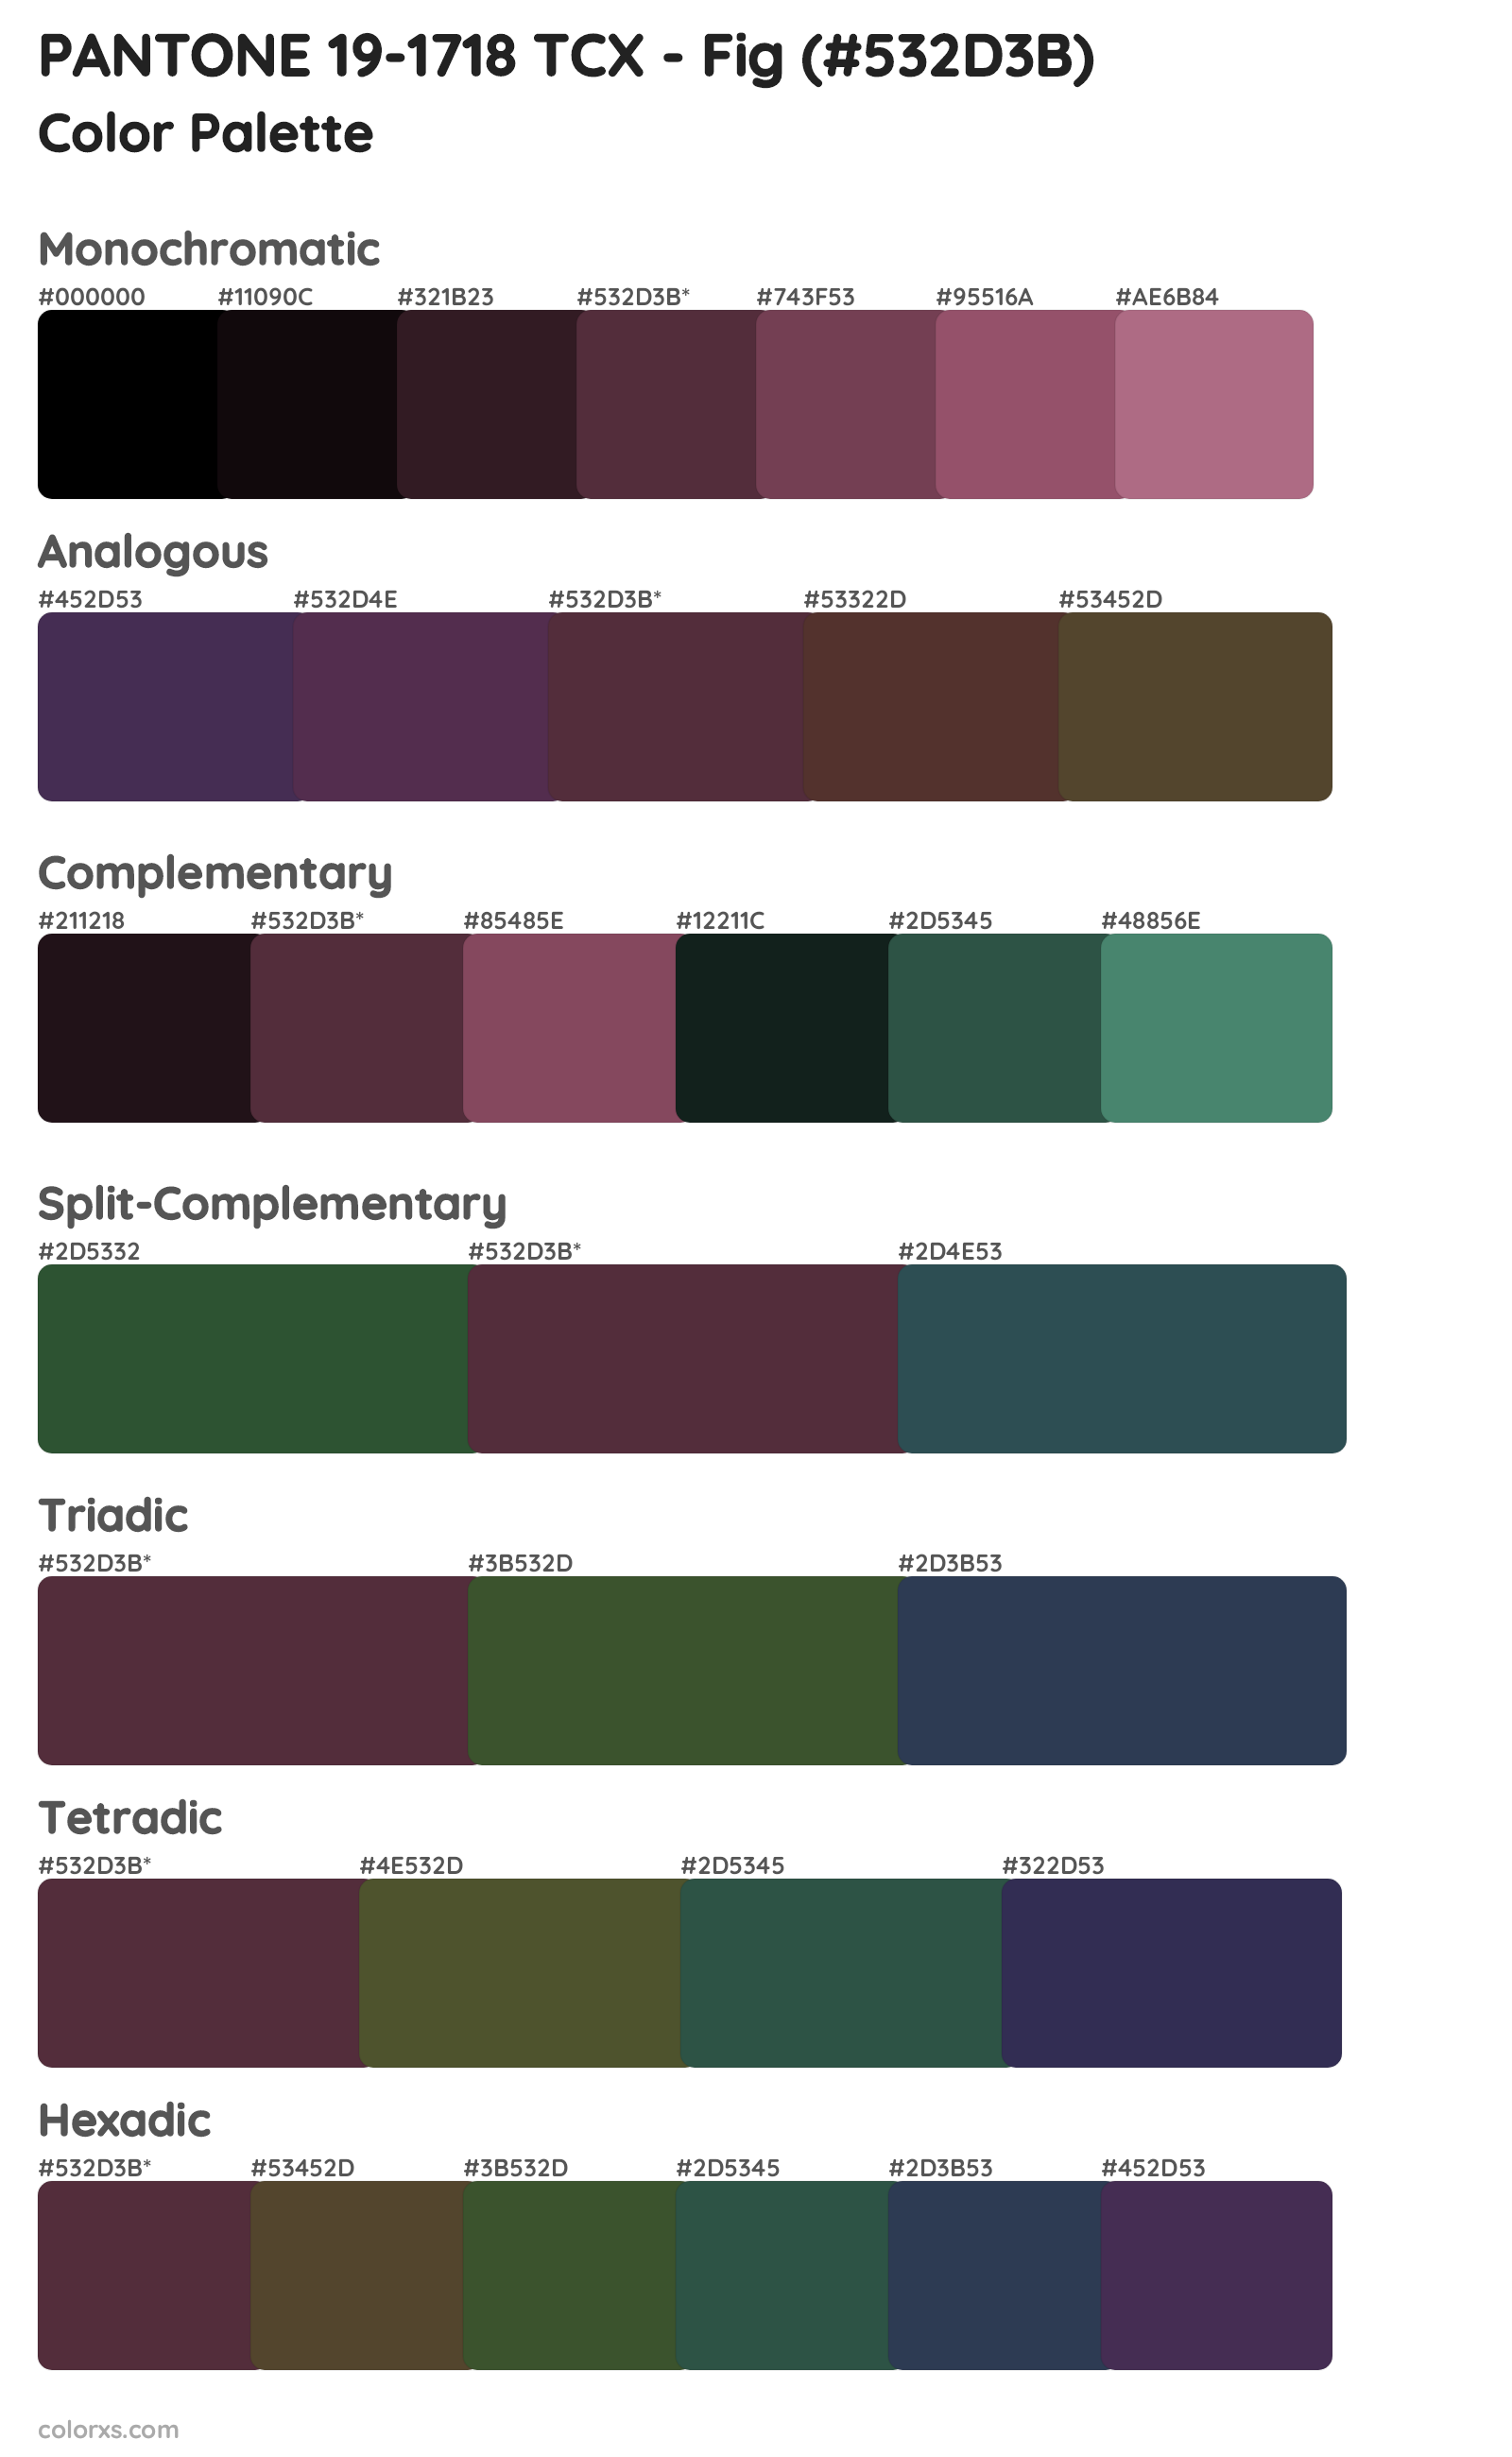 PANTONE 19-1718 TCX - Fig Color Scheme Palettes